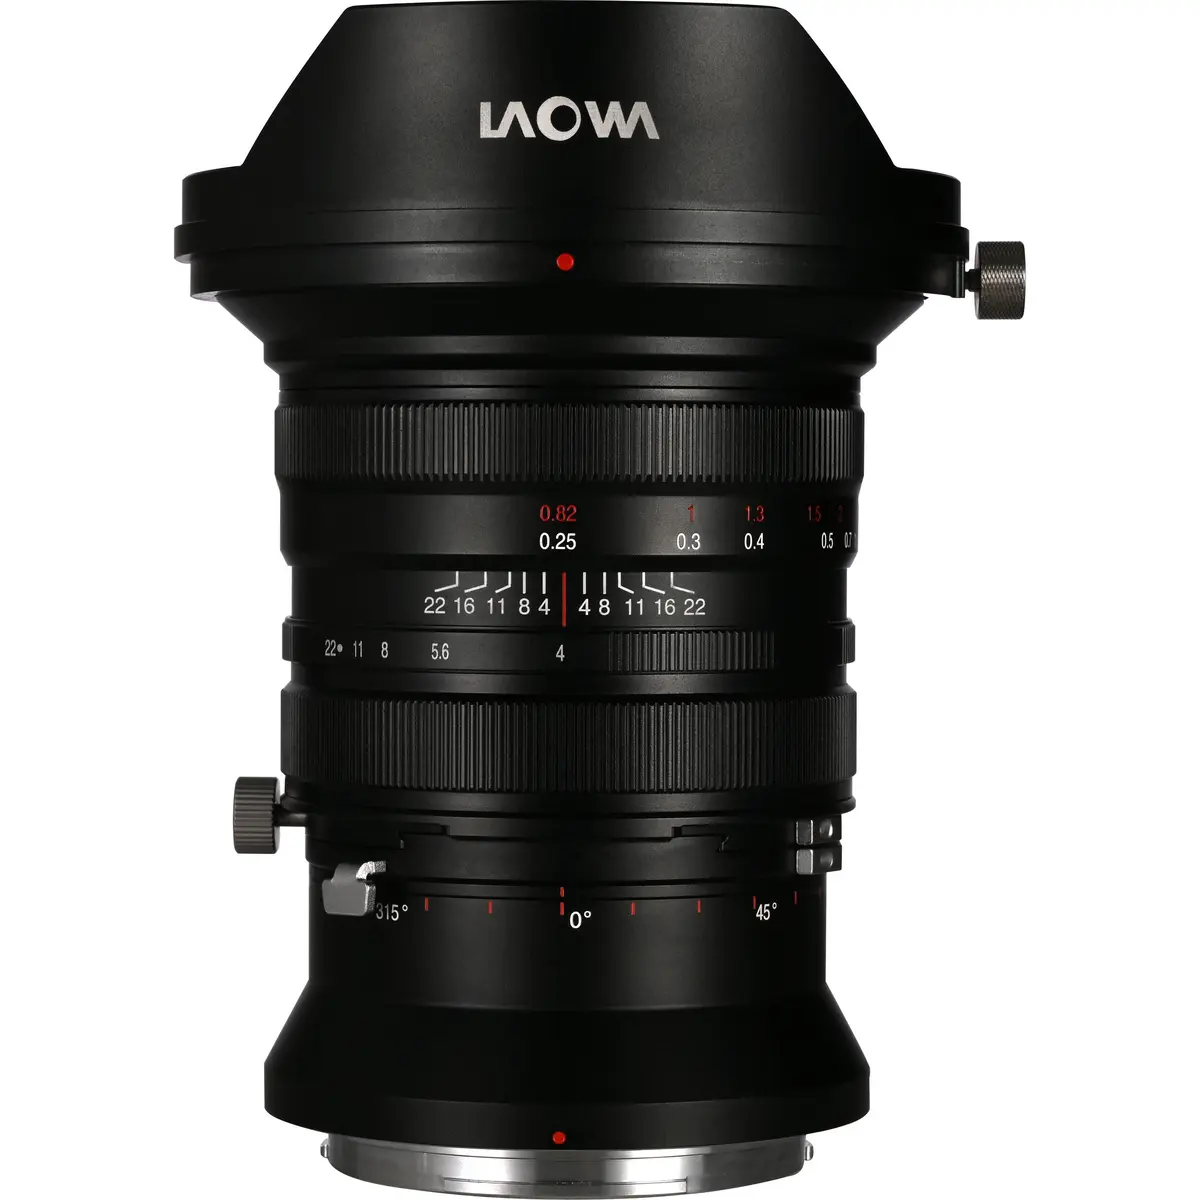 5. Laowa FF S 20mm F4.0 C-Dreamer Zero-D (Fuji GFX)